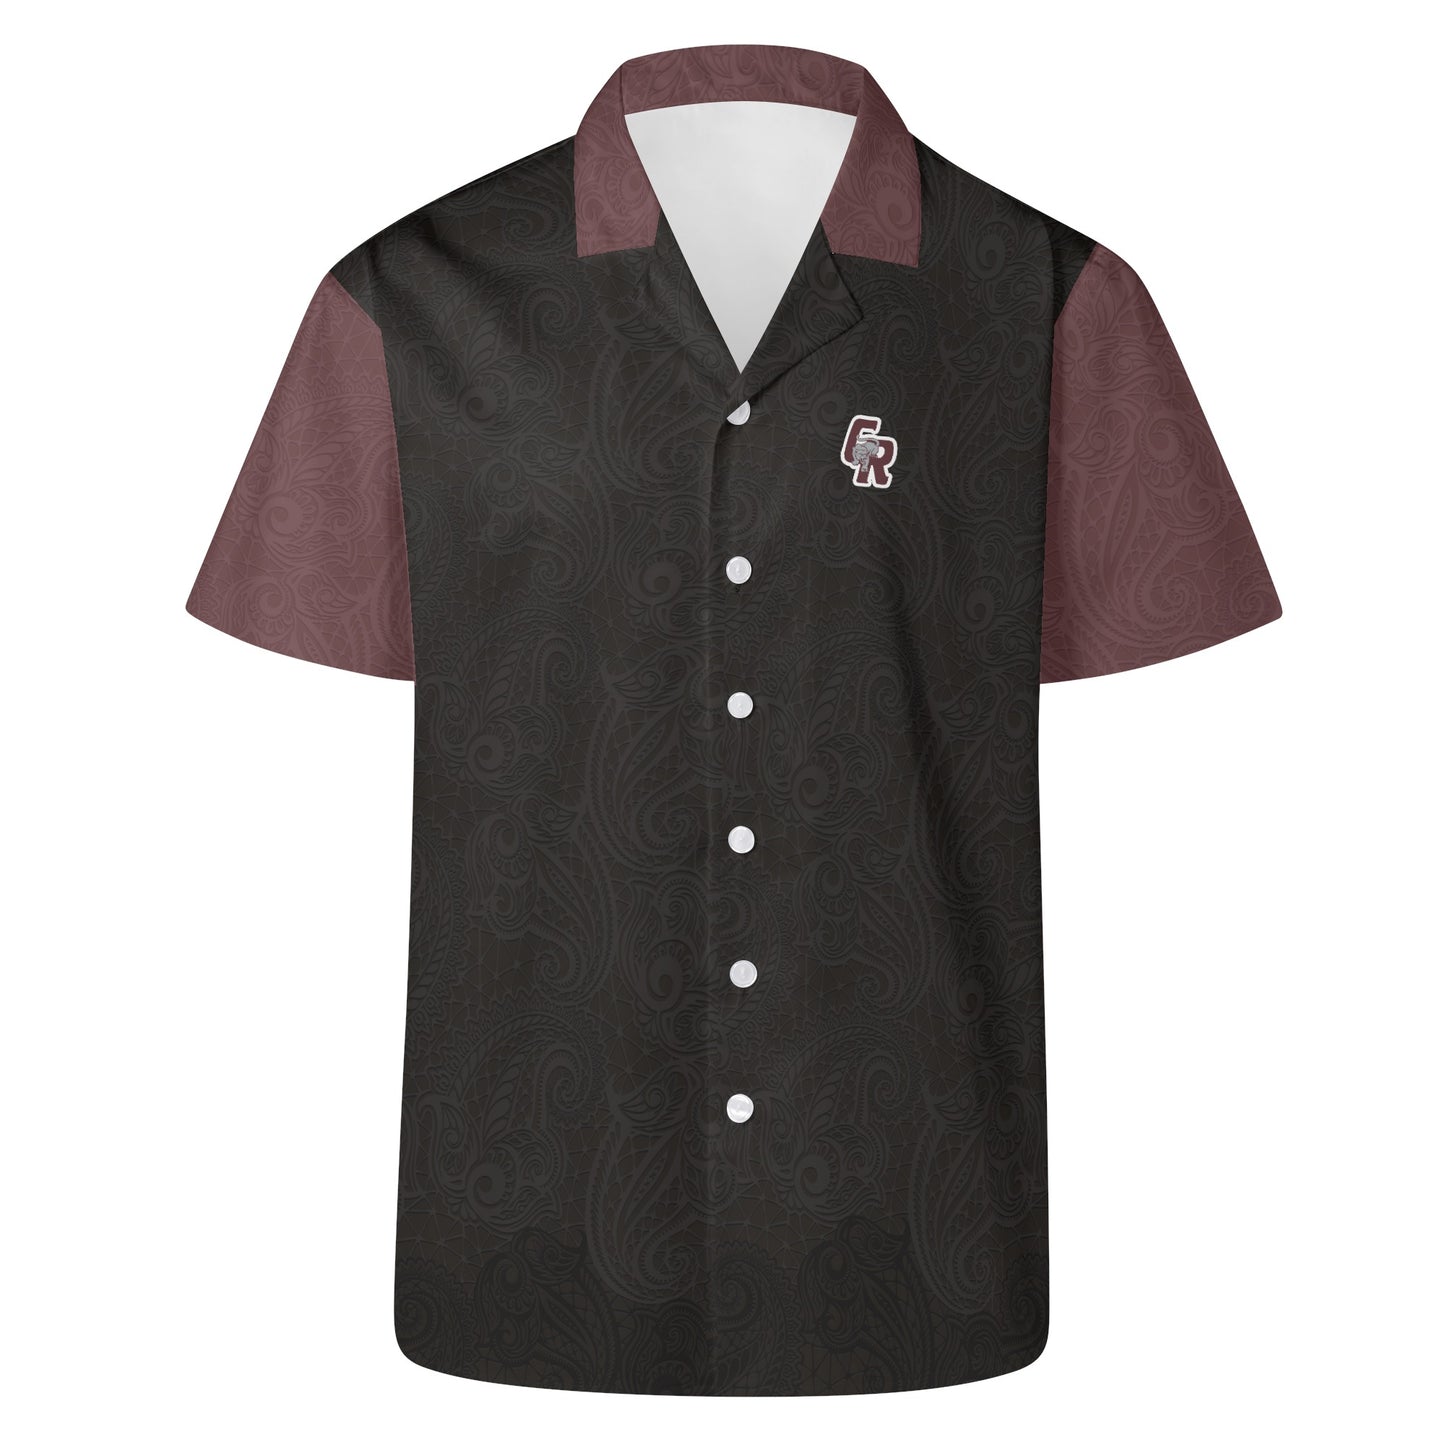 CRHS - Hawaiian Casual Shirt, Black/Maroon